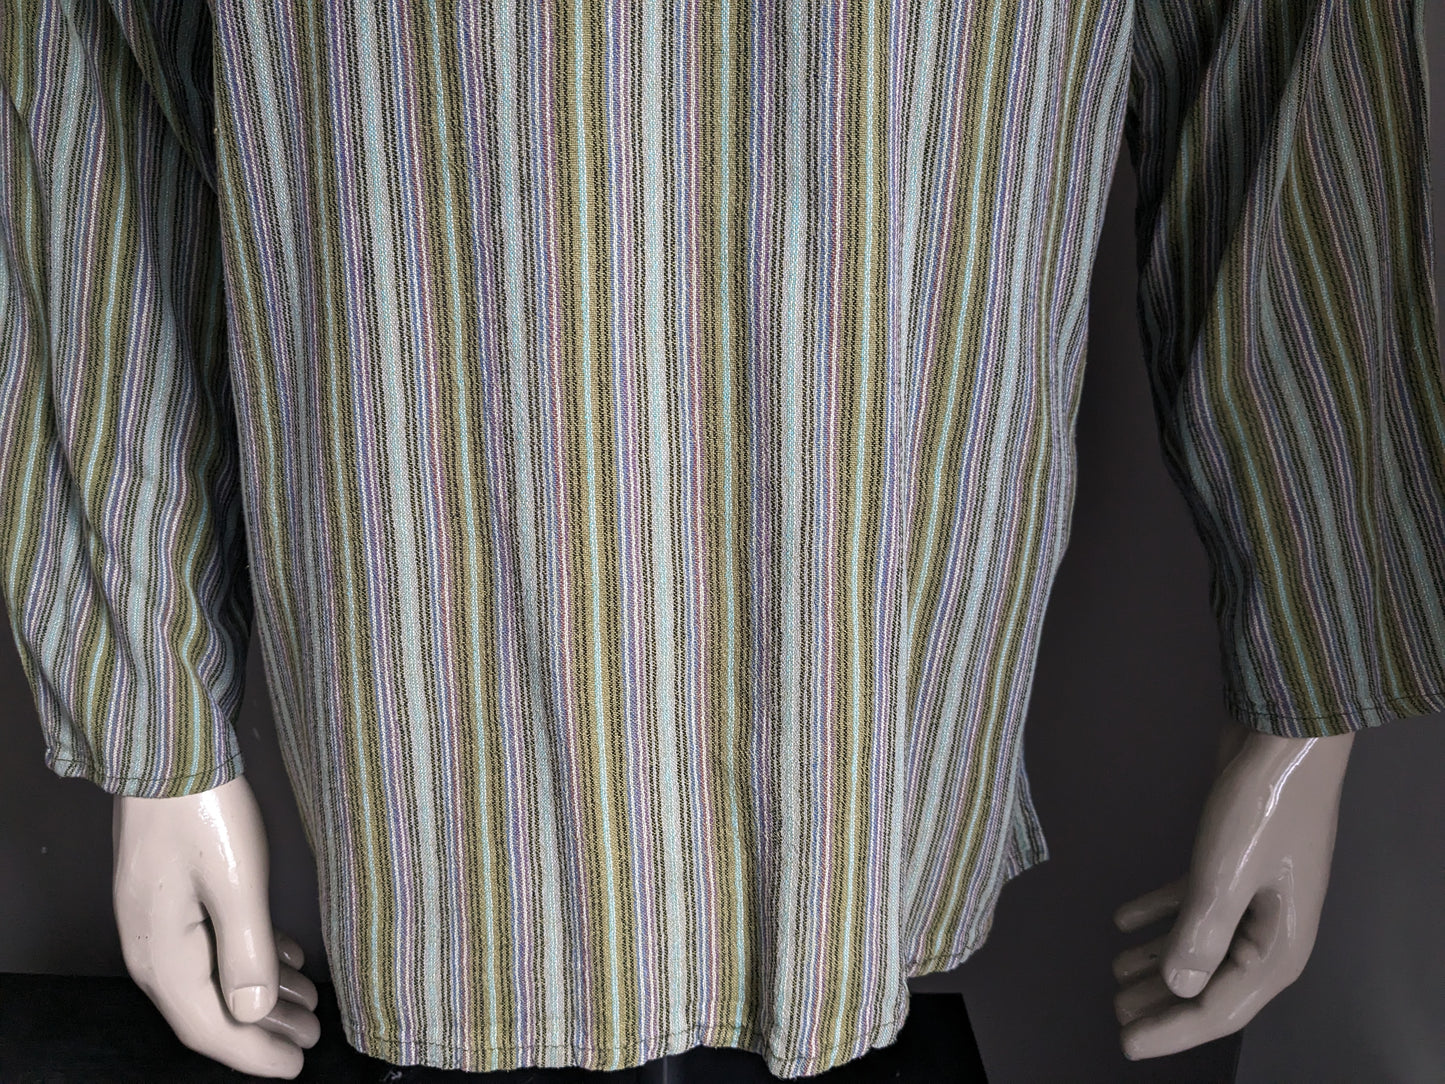 Vintage Polo -Pullover / Hemd mit erhöhtem / Bauern / Mao -Kragen. Grün lila braun blau mit Tasche gestreift. Größe xl.